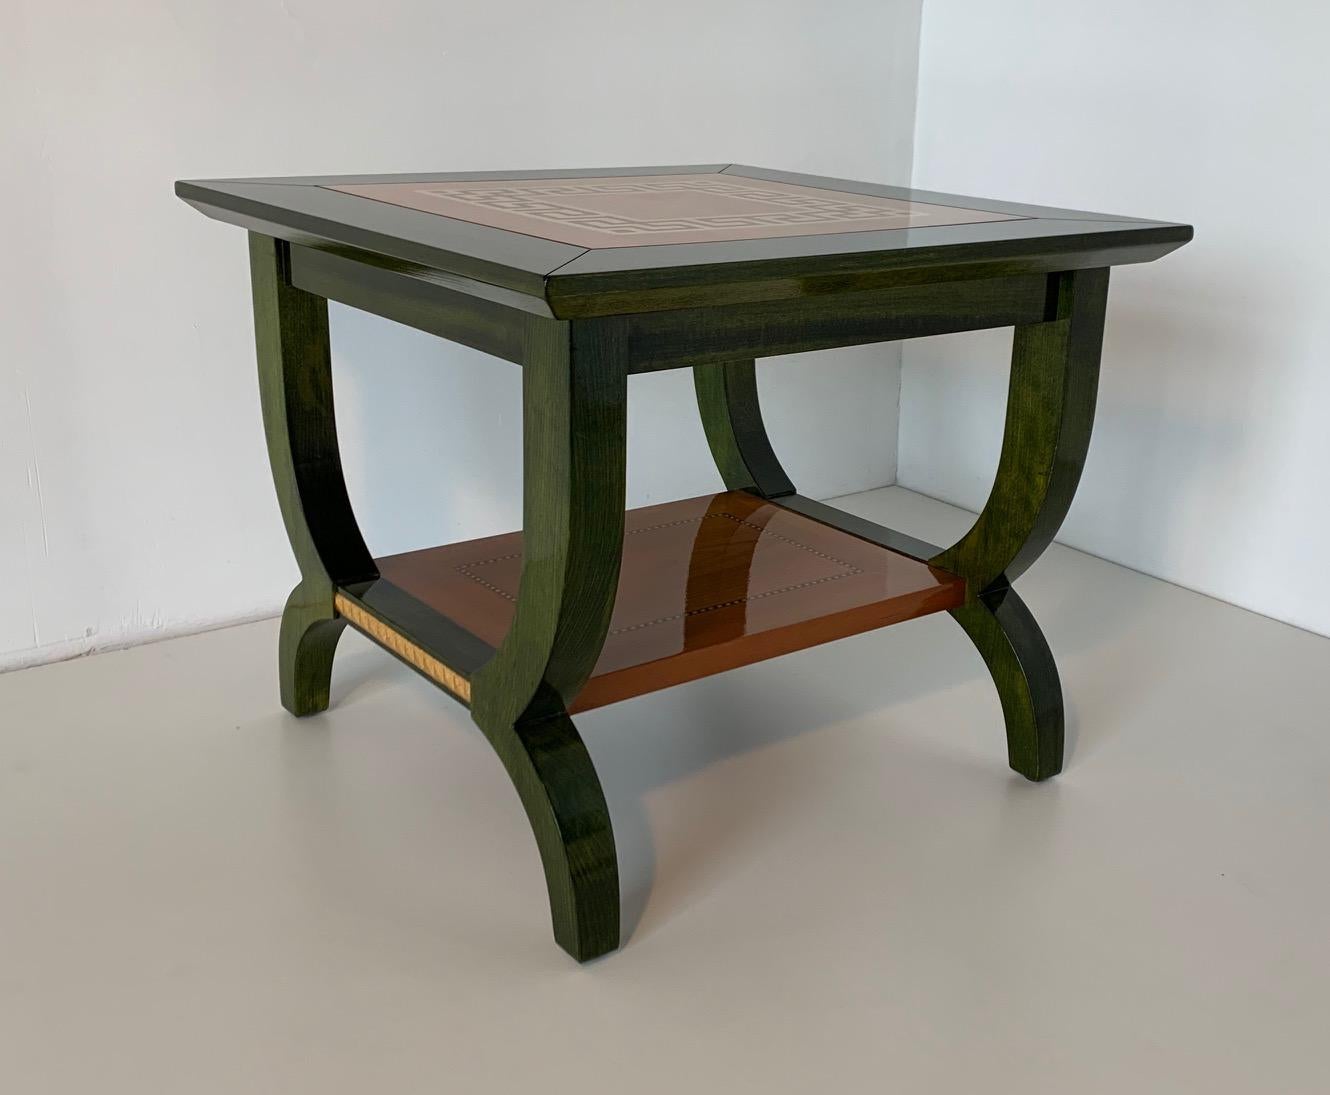 Cette table basse a été produite en Italie dans les années 1980. Elle est en aniline verte avec une fine incrustation d'érable qui rappelle la grecque Versace.
Les pieds sont décorés à la feuille d'or.
Entièrement restauré.